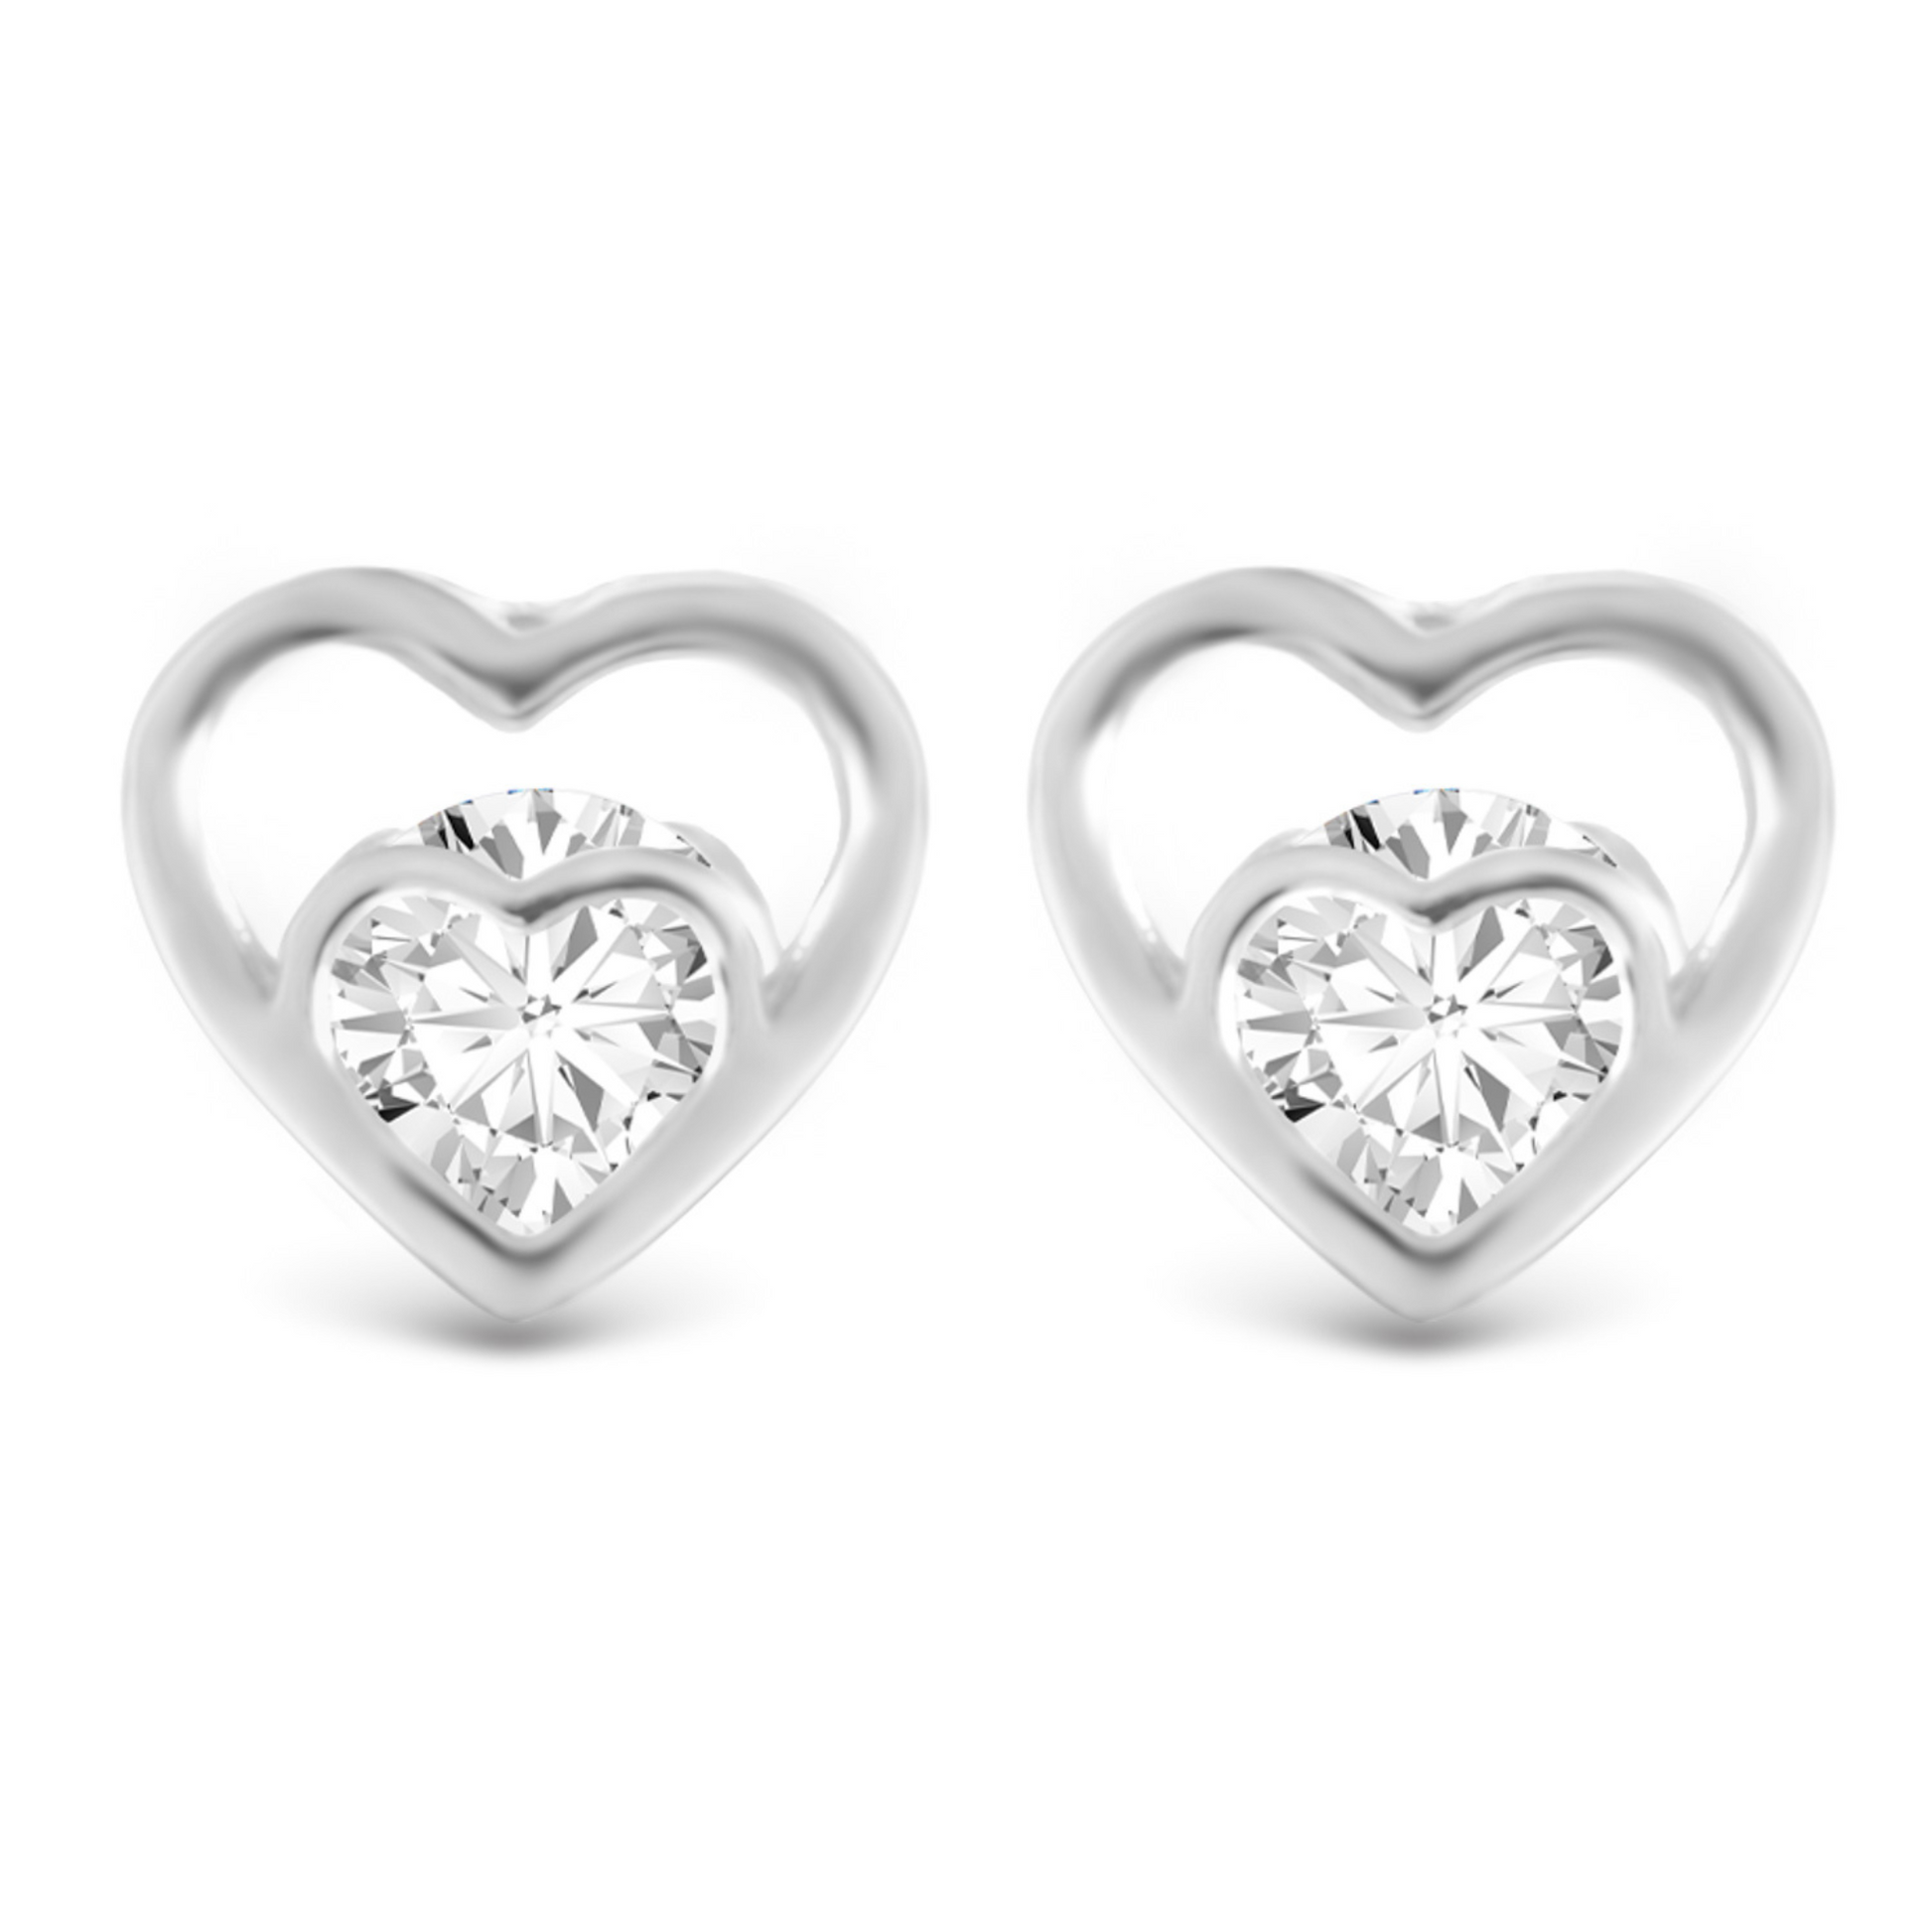 Double heart stud earrings in silver